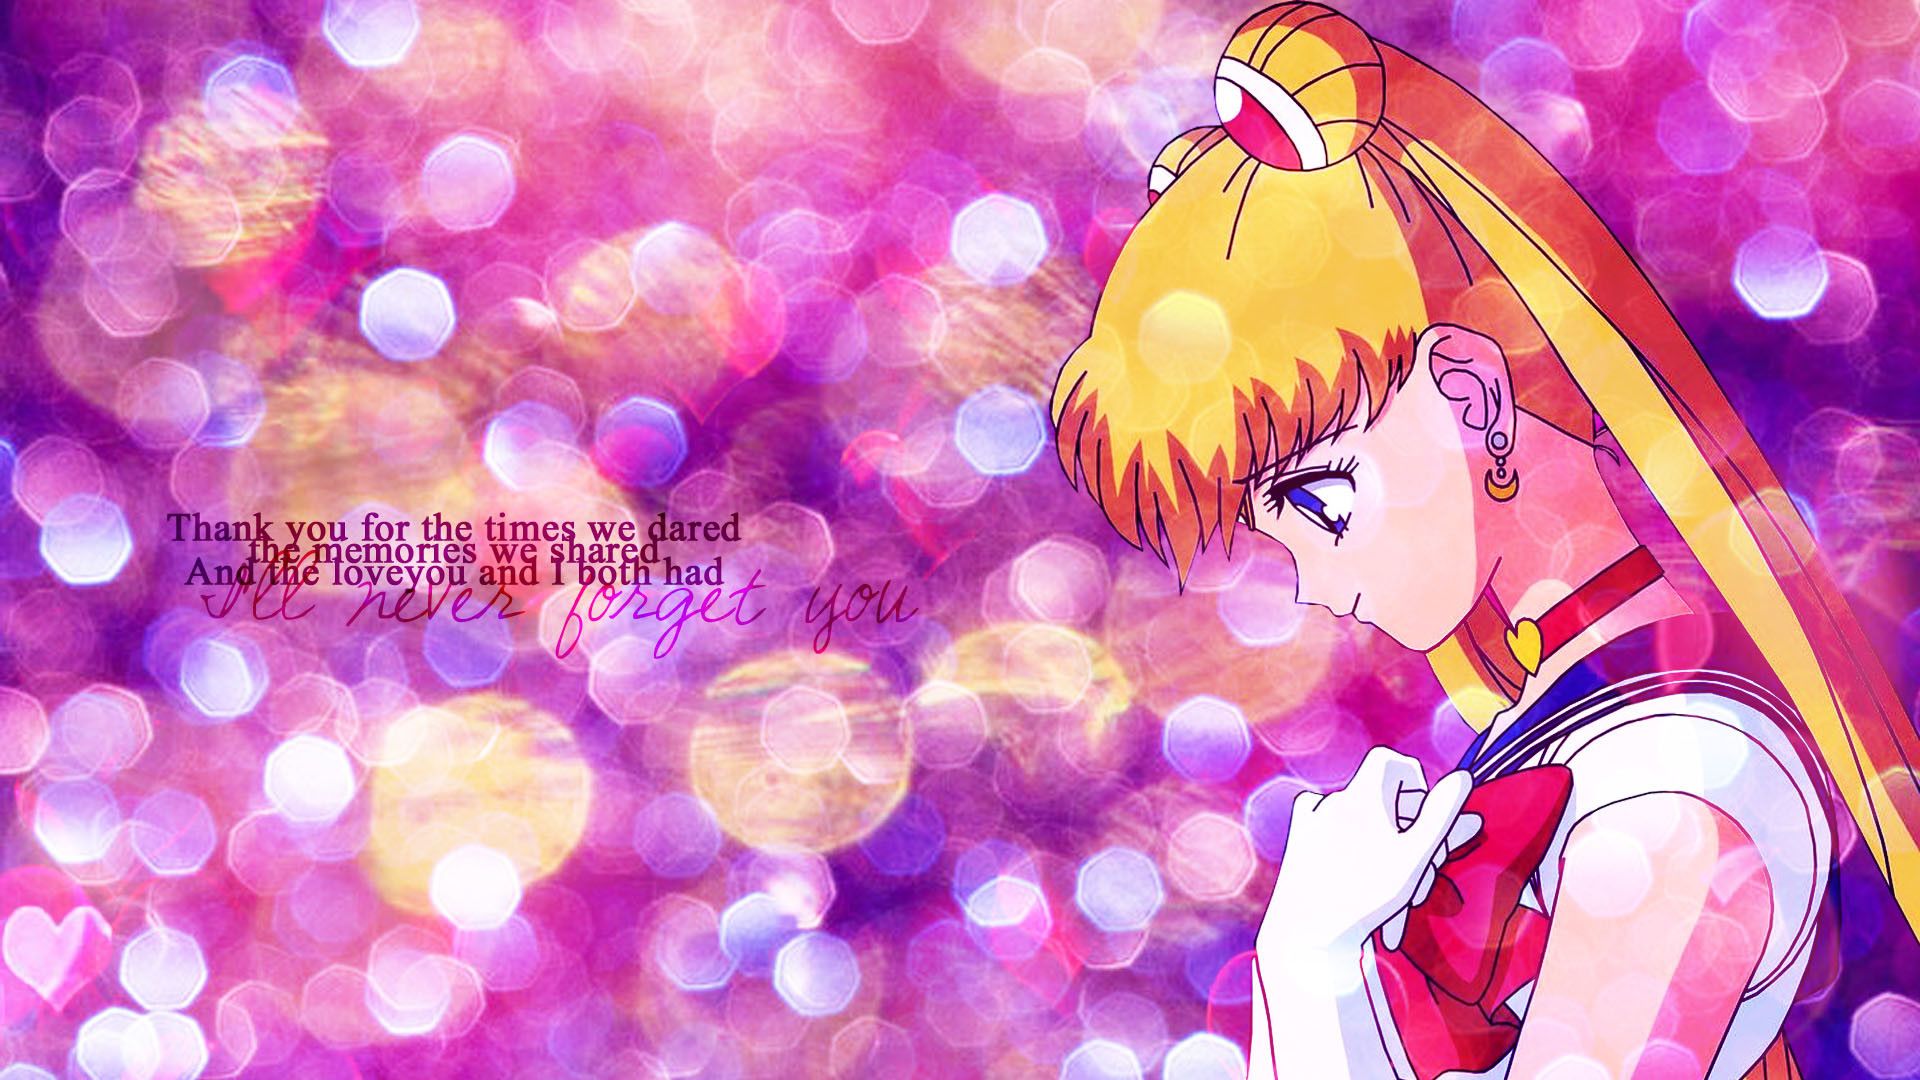 Sailor Moon Christmas